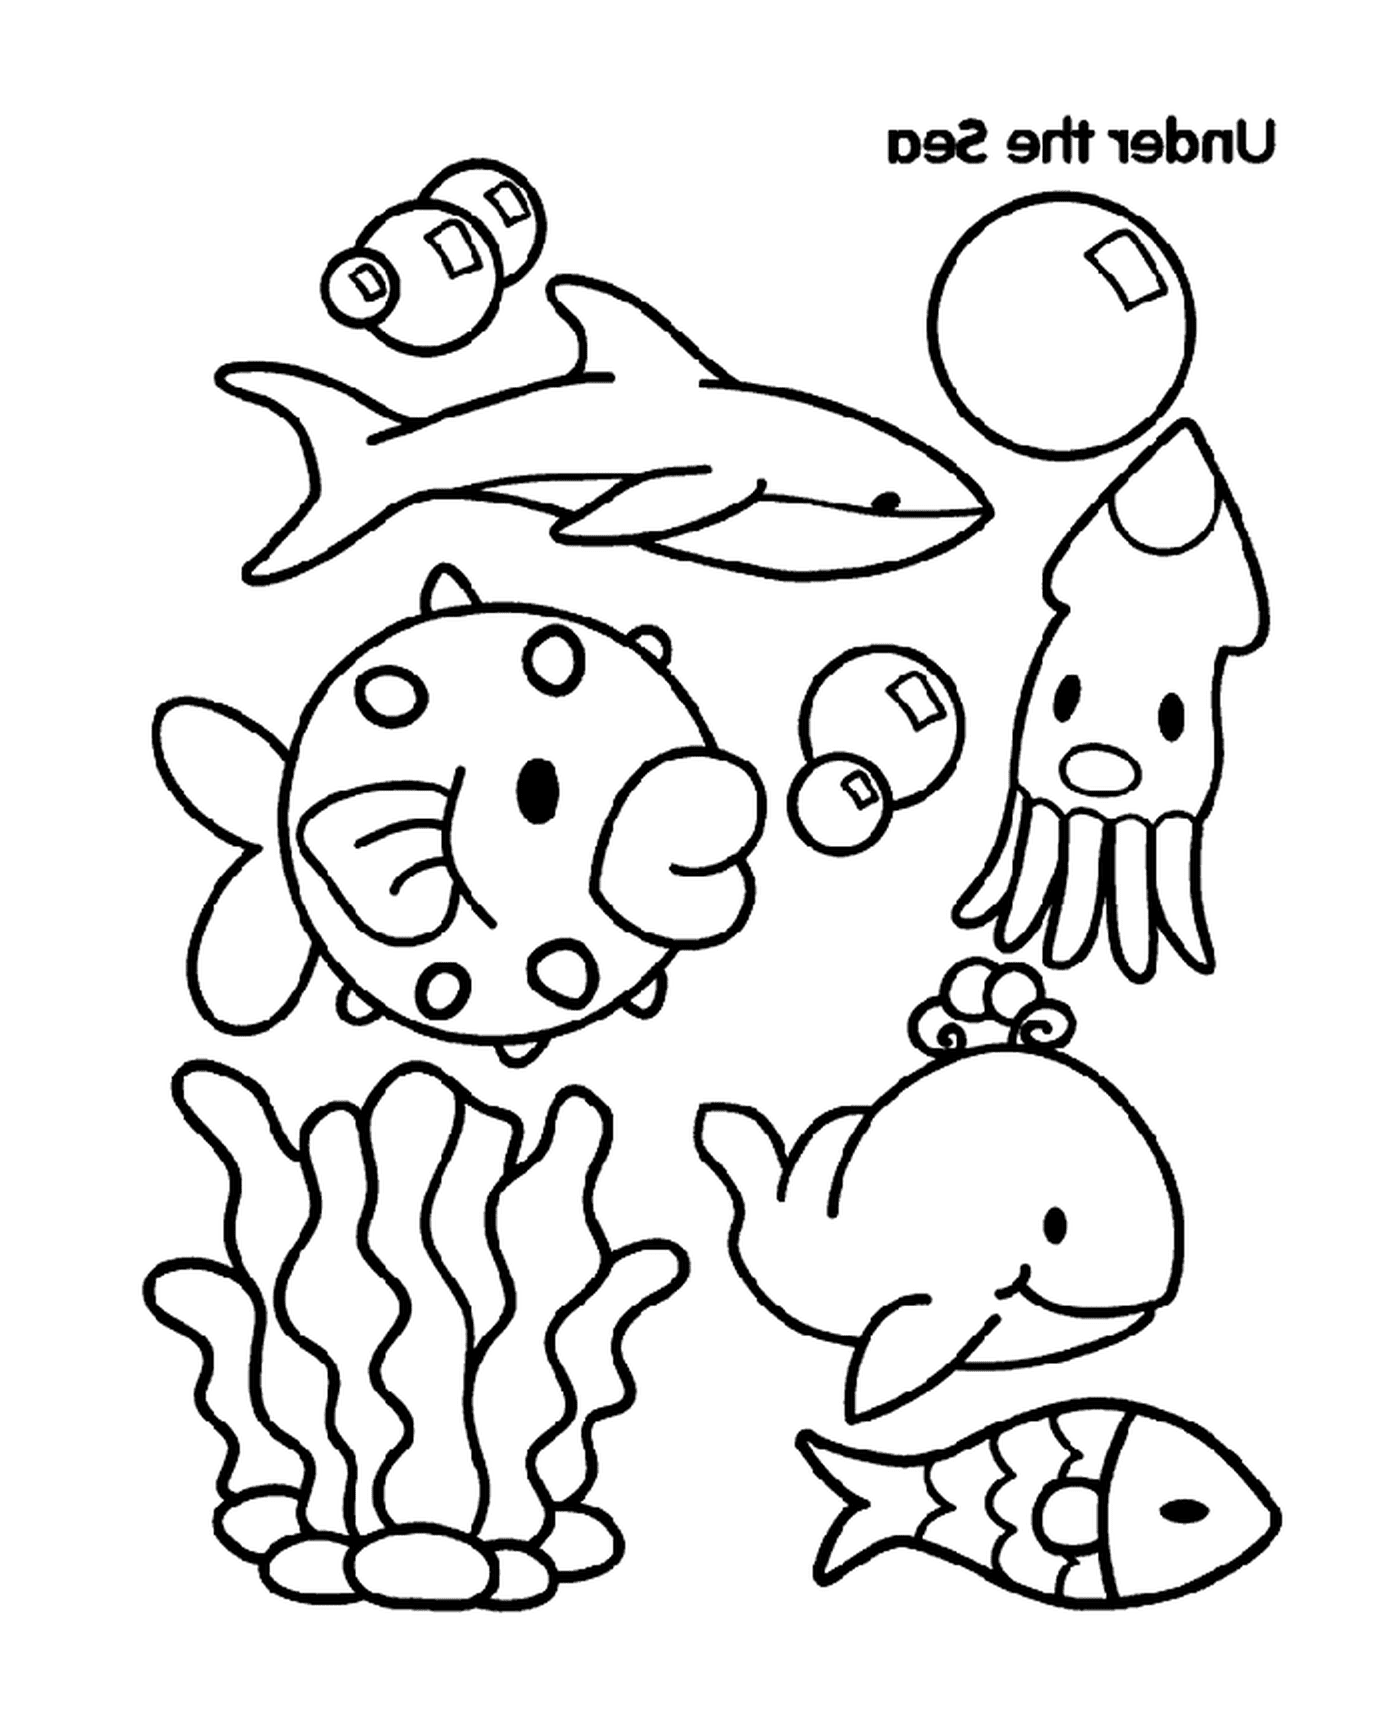  समुद्री जानवरों का एक समूह 